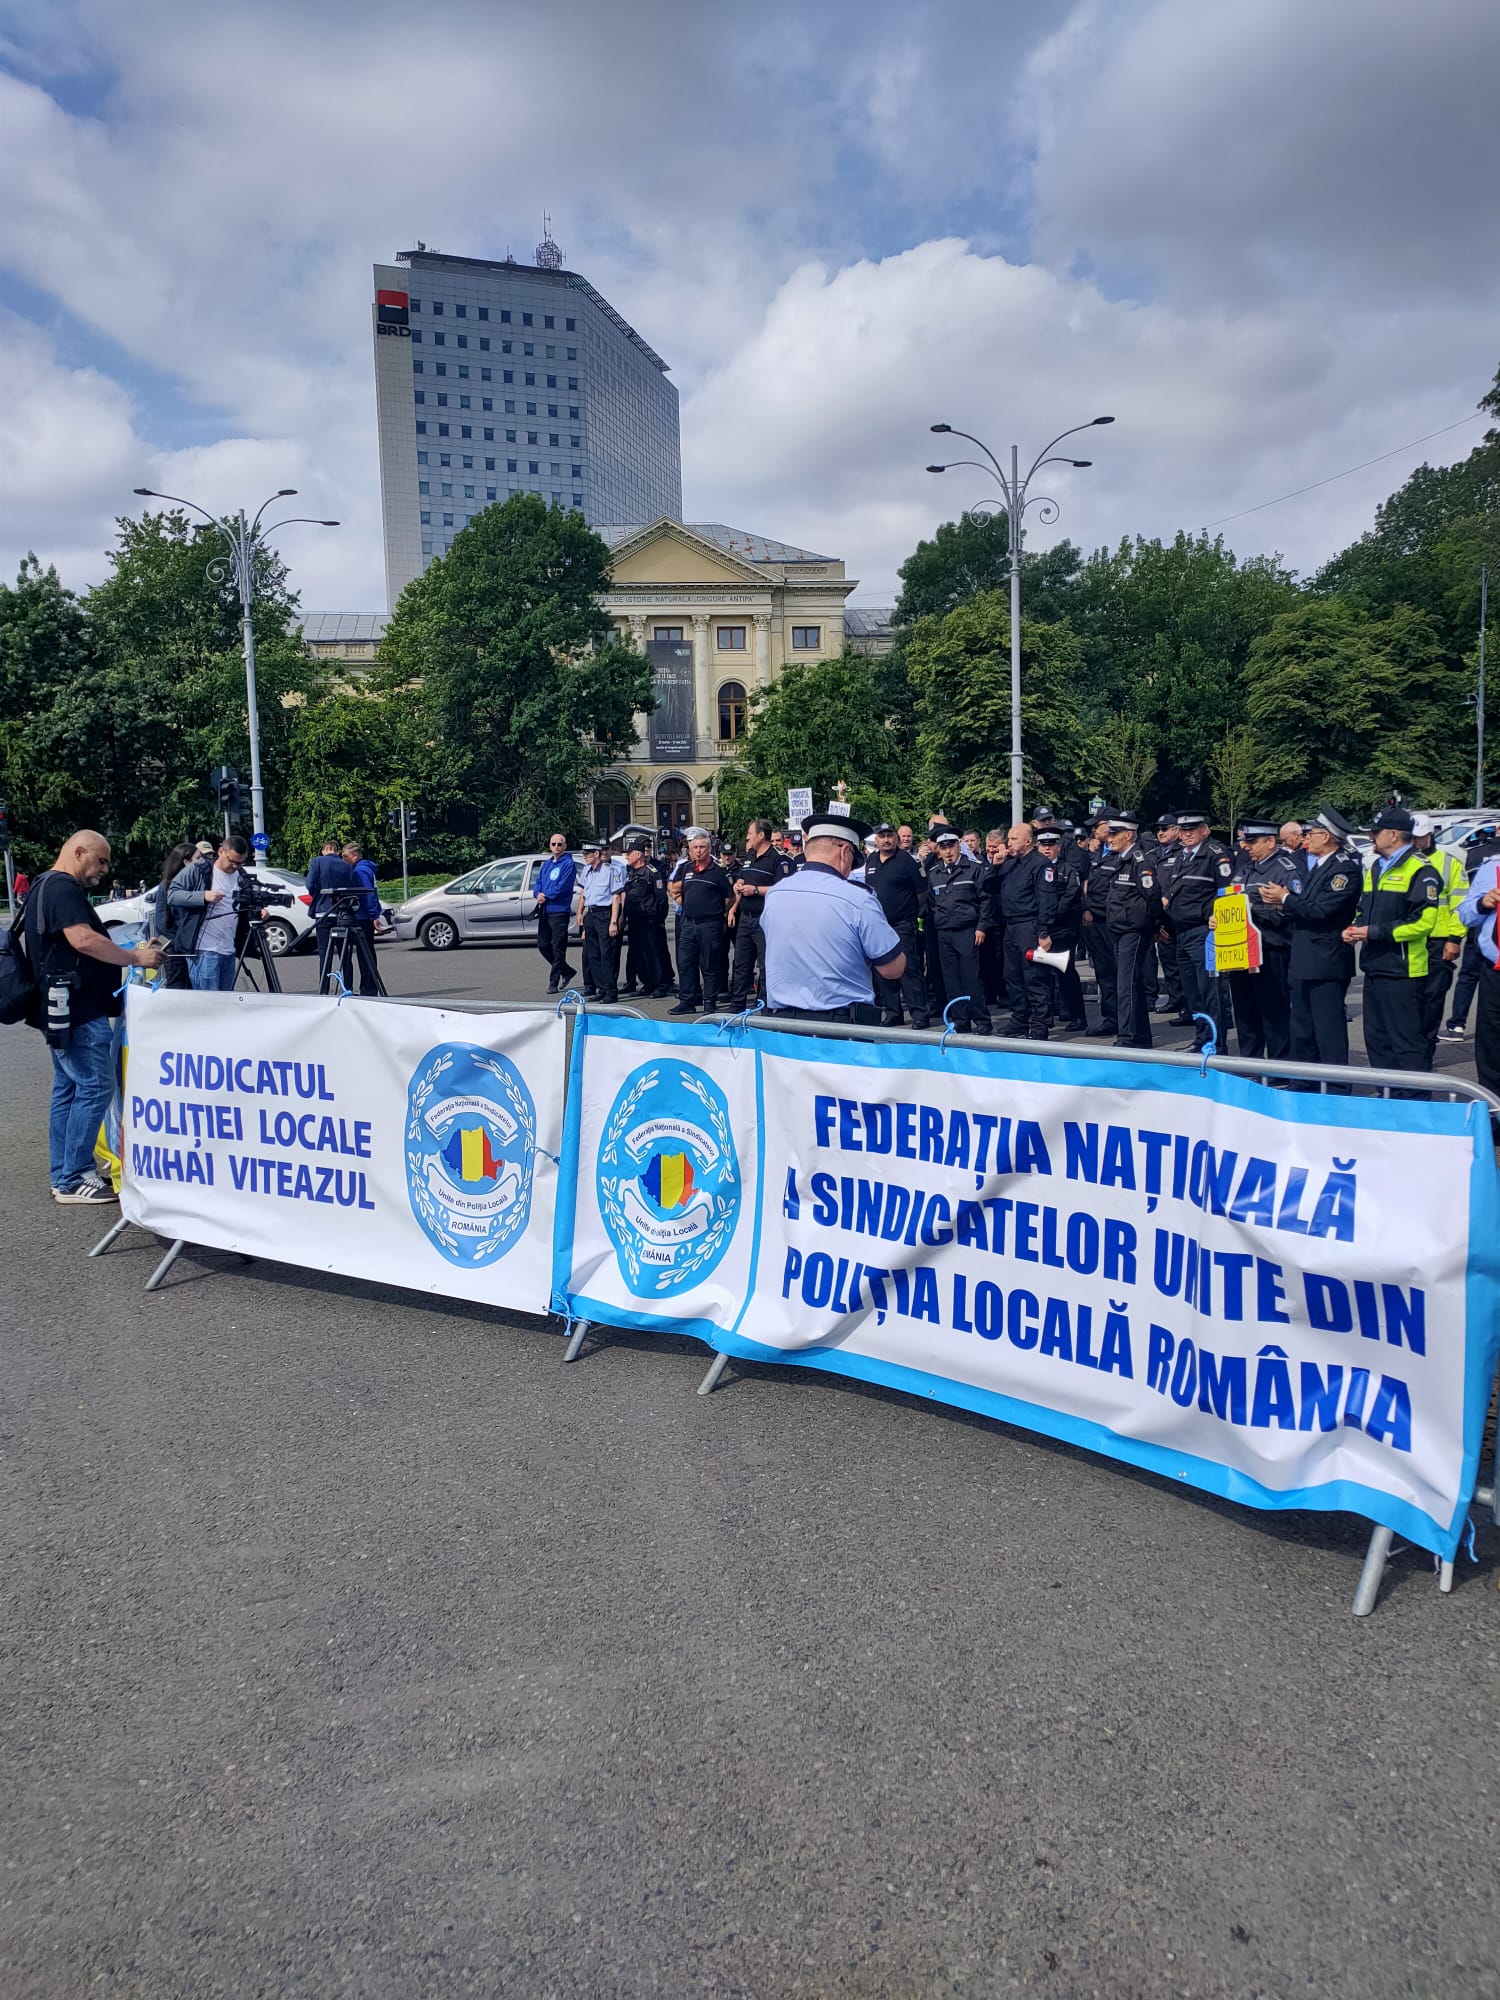 COMUNICAT DE PRESĂ - Federația Națională a Sindicatelor Unite din Poliția Locală România